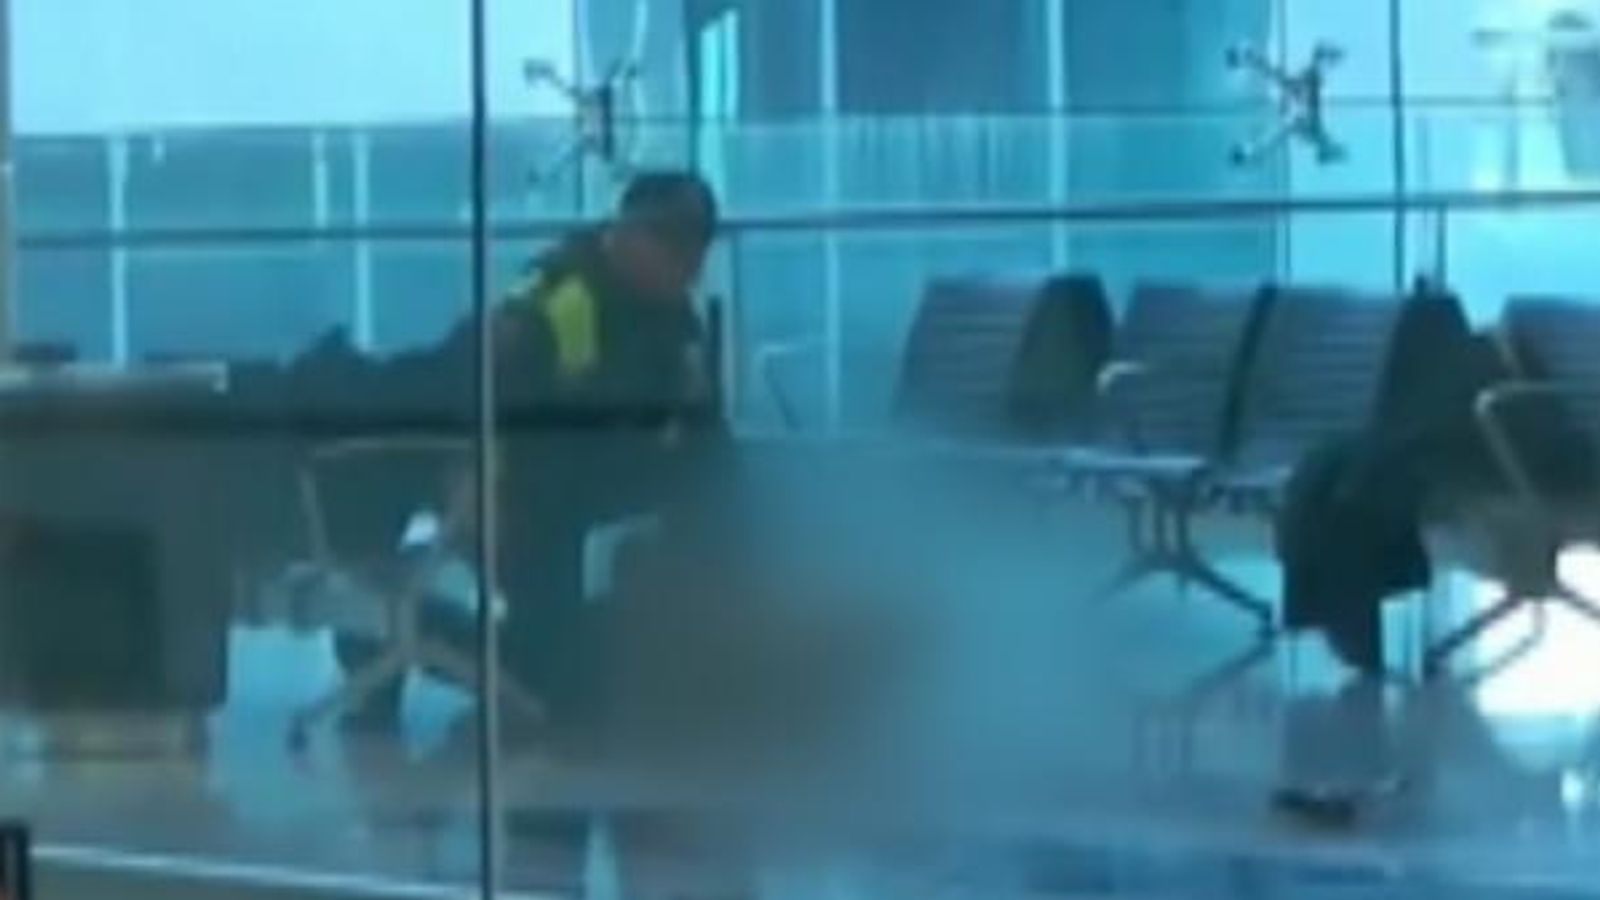 Australie. Un homme arrêté après des coups de feu à l’aéroport de Canberra |  Nouvelles du monde